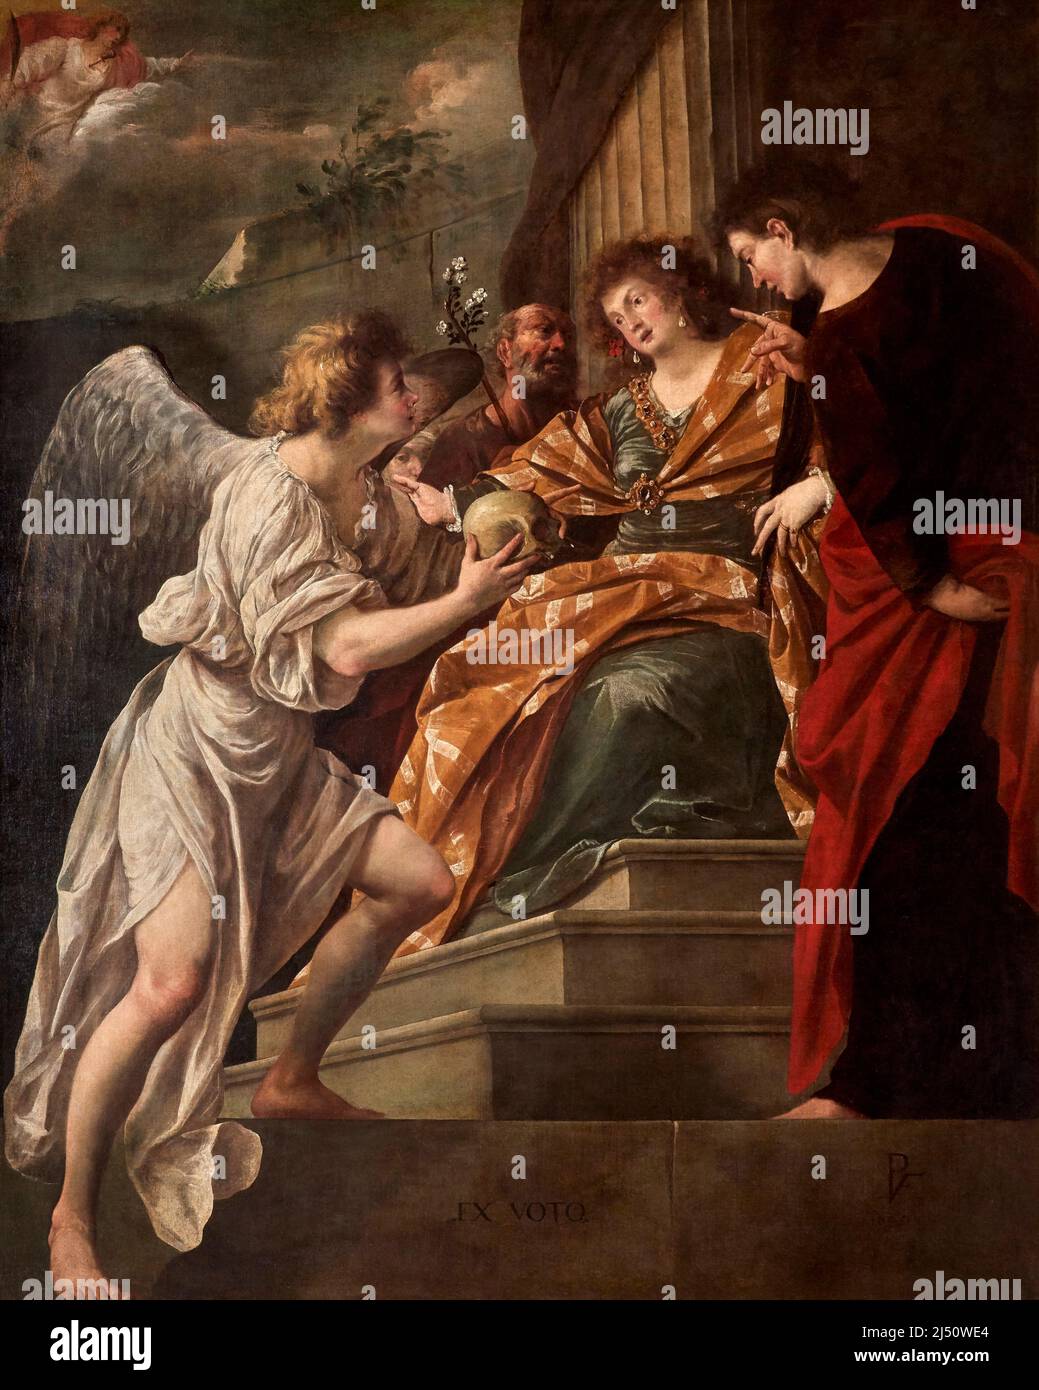 Scena votiva con S. Giovanni Evangelista,S. Giuseppe e S. Giustina  - olio su tela - Pietro Vecchia  - 1640 - Venezia, Gallerie dell’ Accademia Stock Photo